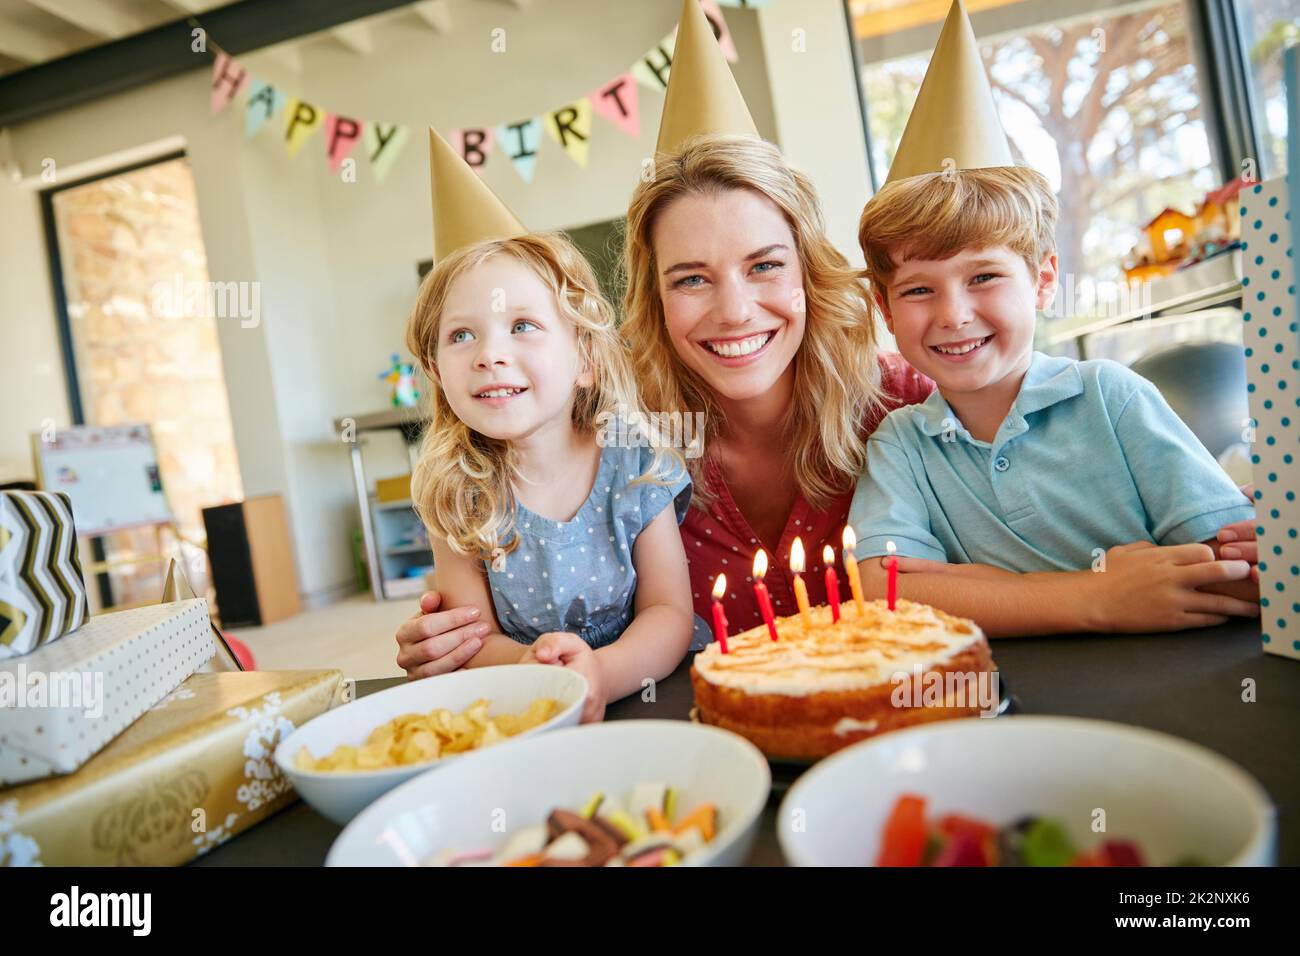 Dies sind die Momente, die man schätzen muss. Porträt einer Mutter und ihrer beiden Kinder, die zu Hause eine Geburtstagsfeier feiern. Stockfoto